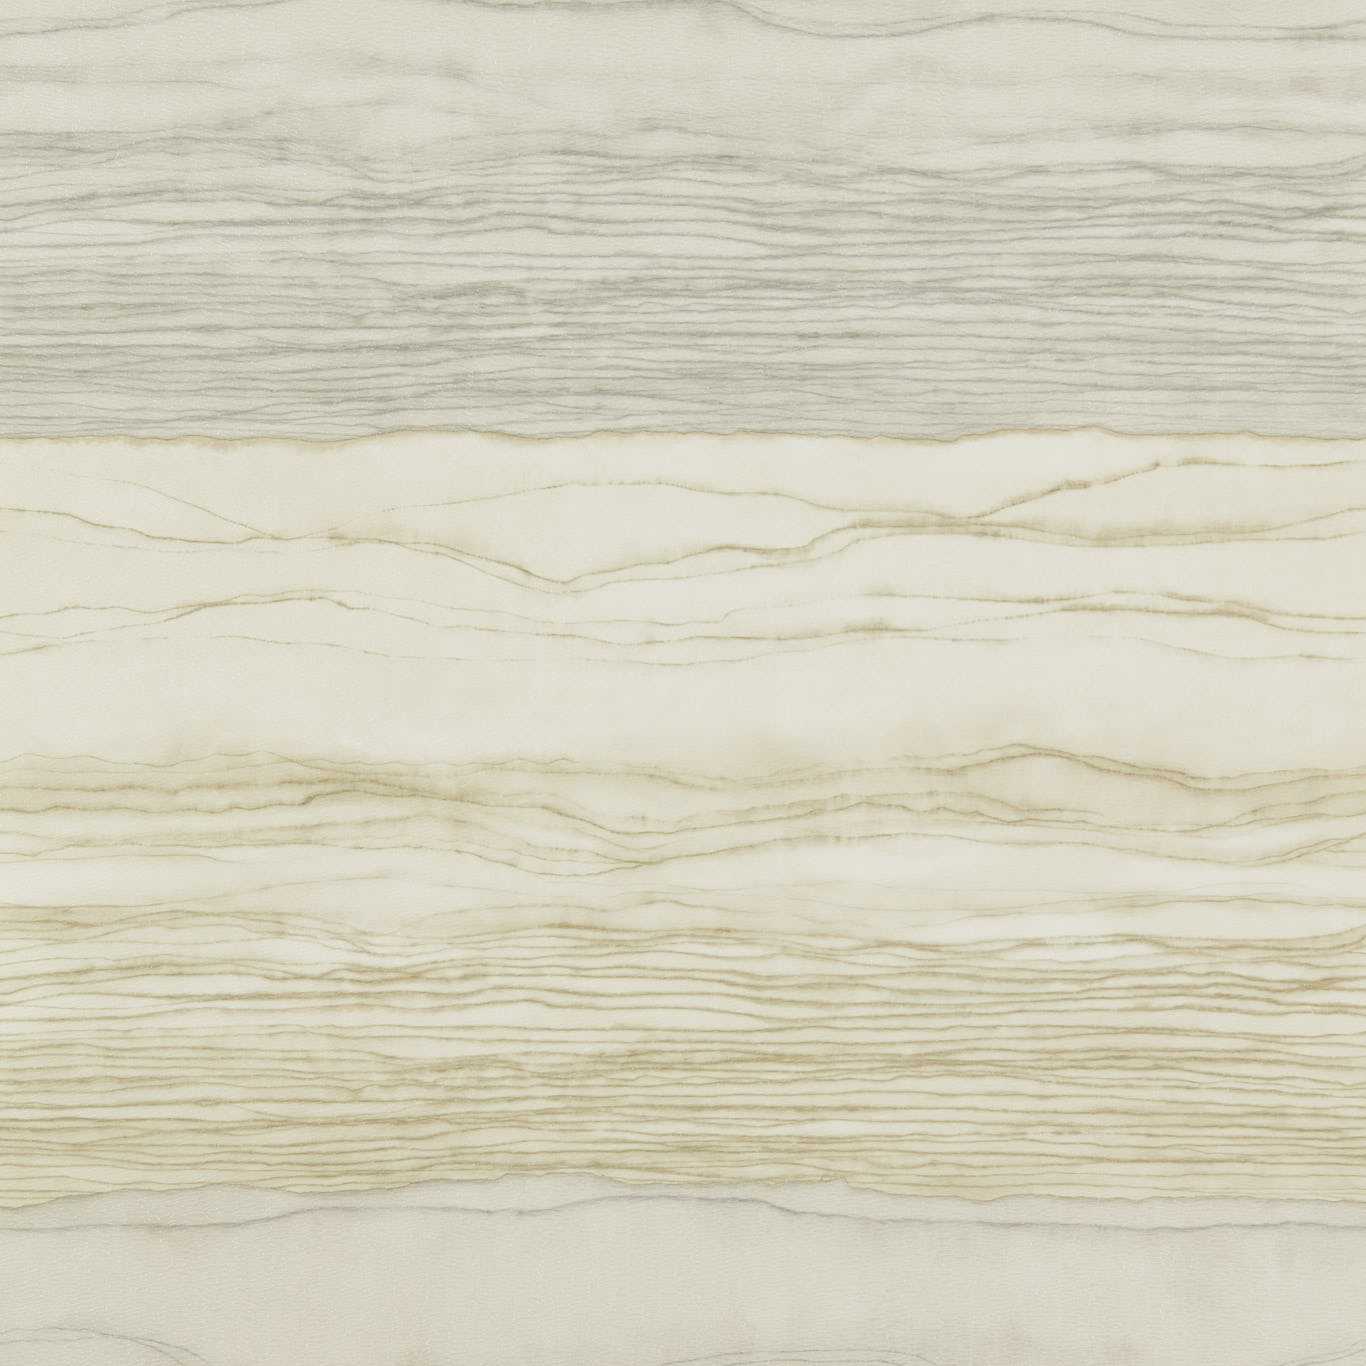 Anthology Metamorphic Alabaster / Sandstone Wallpaper by HAR